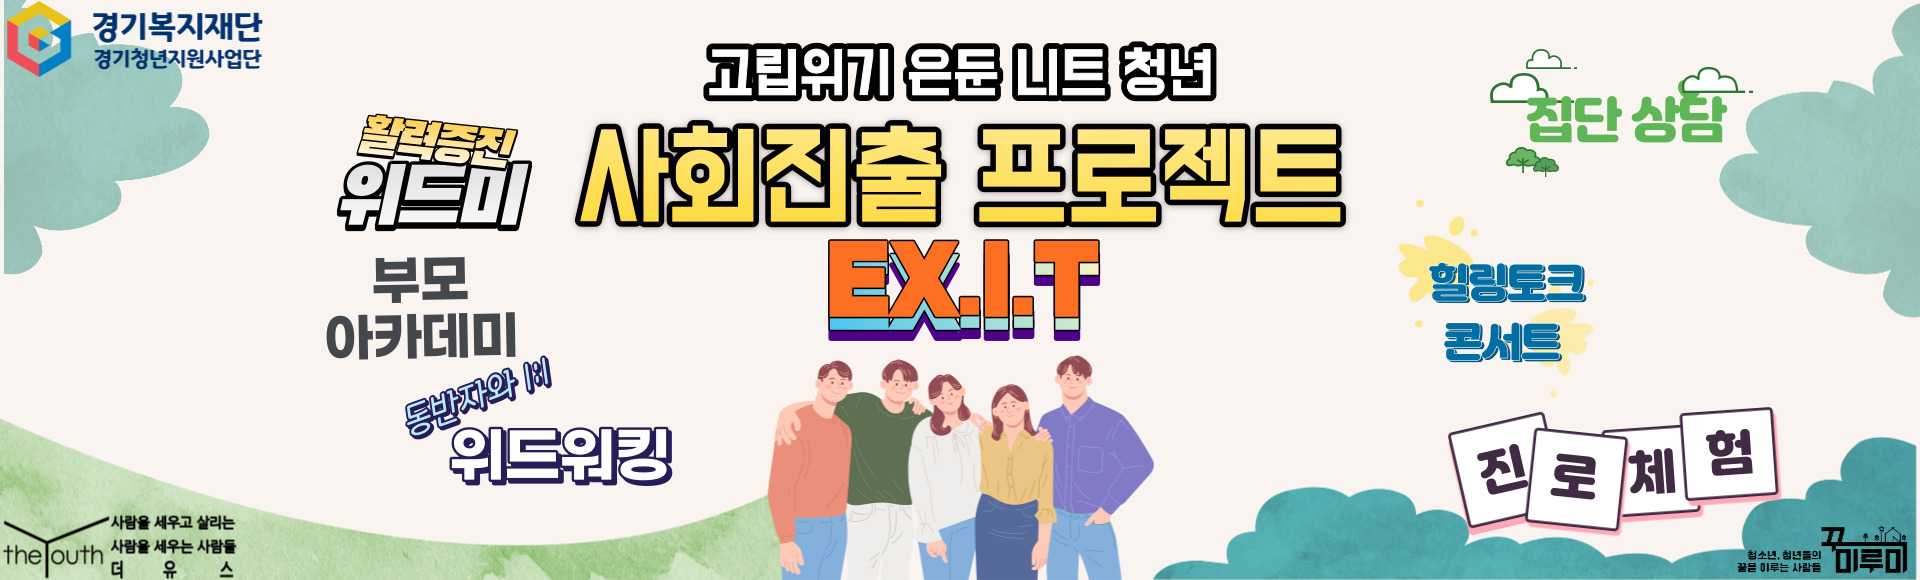 경기도 고립청년지원사업  EX.I.T 참여자 모집